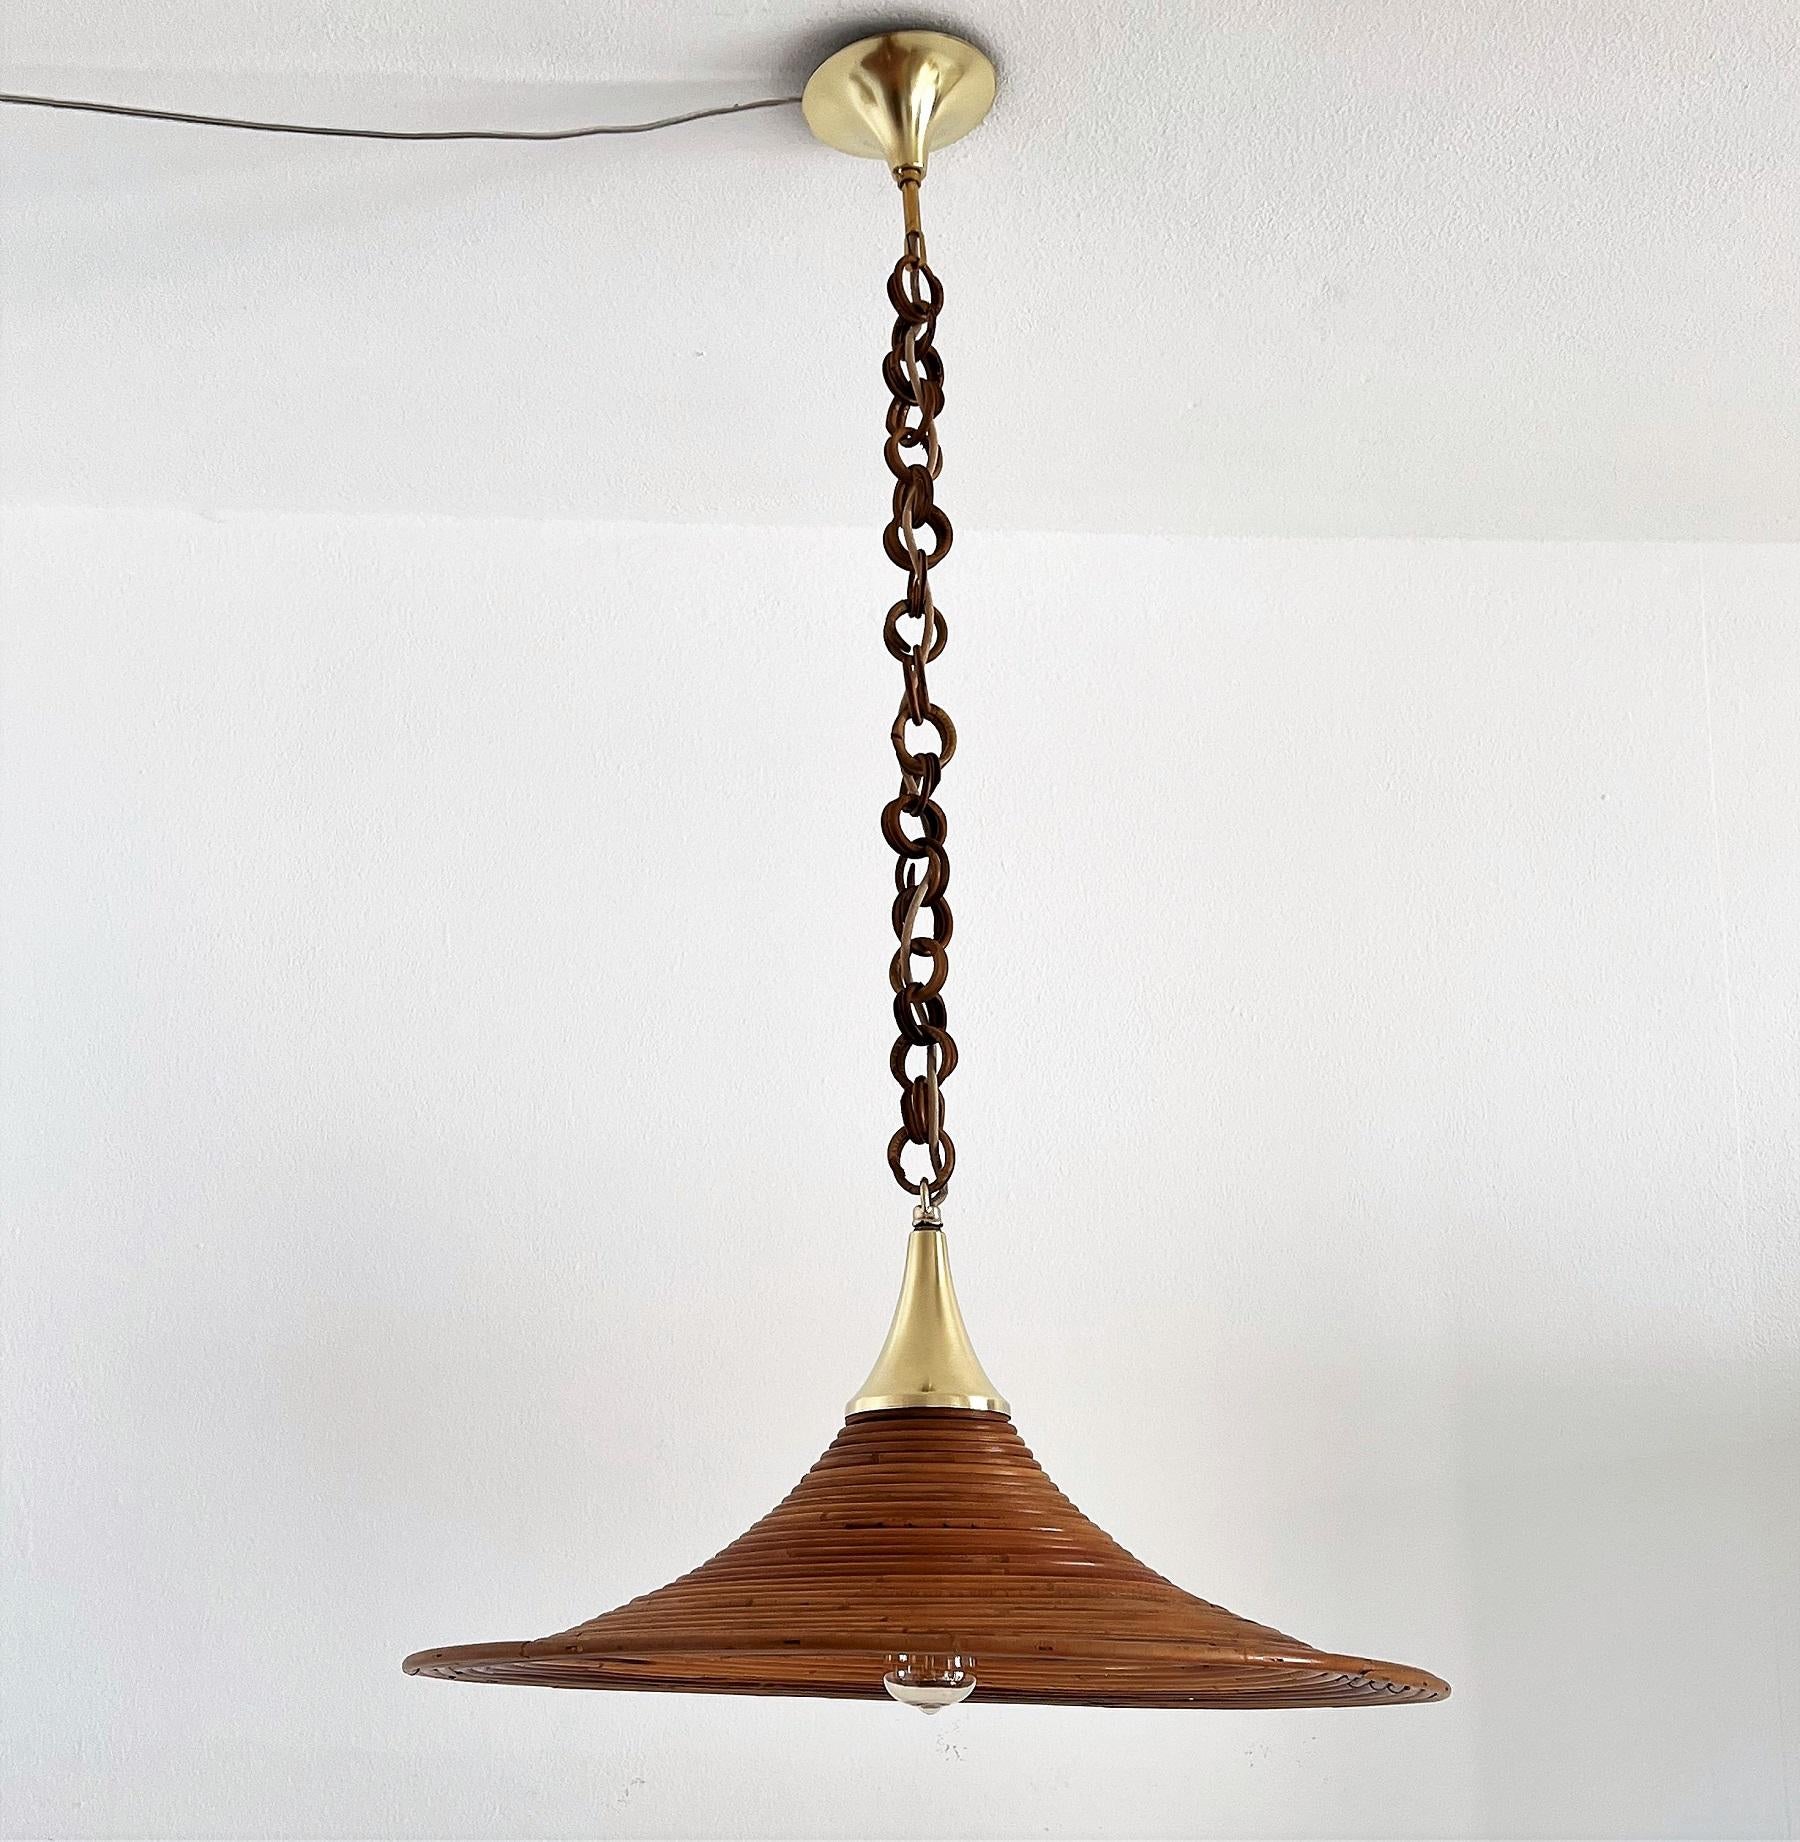 Magnifique lampe suspendue fabriquée à la main en bambou courbé avec des détails en laiton et une chaîne en osier d'origine.
La lampe suspendue est en très bon état d'origine, le bambou sans défauts mais peut bien sûr montrer de petits signes d'âge